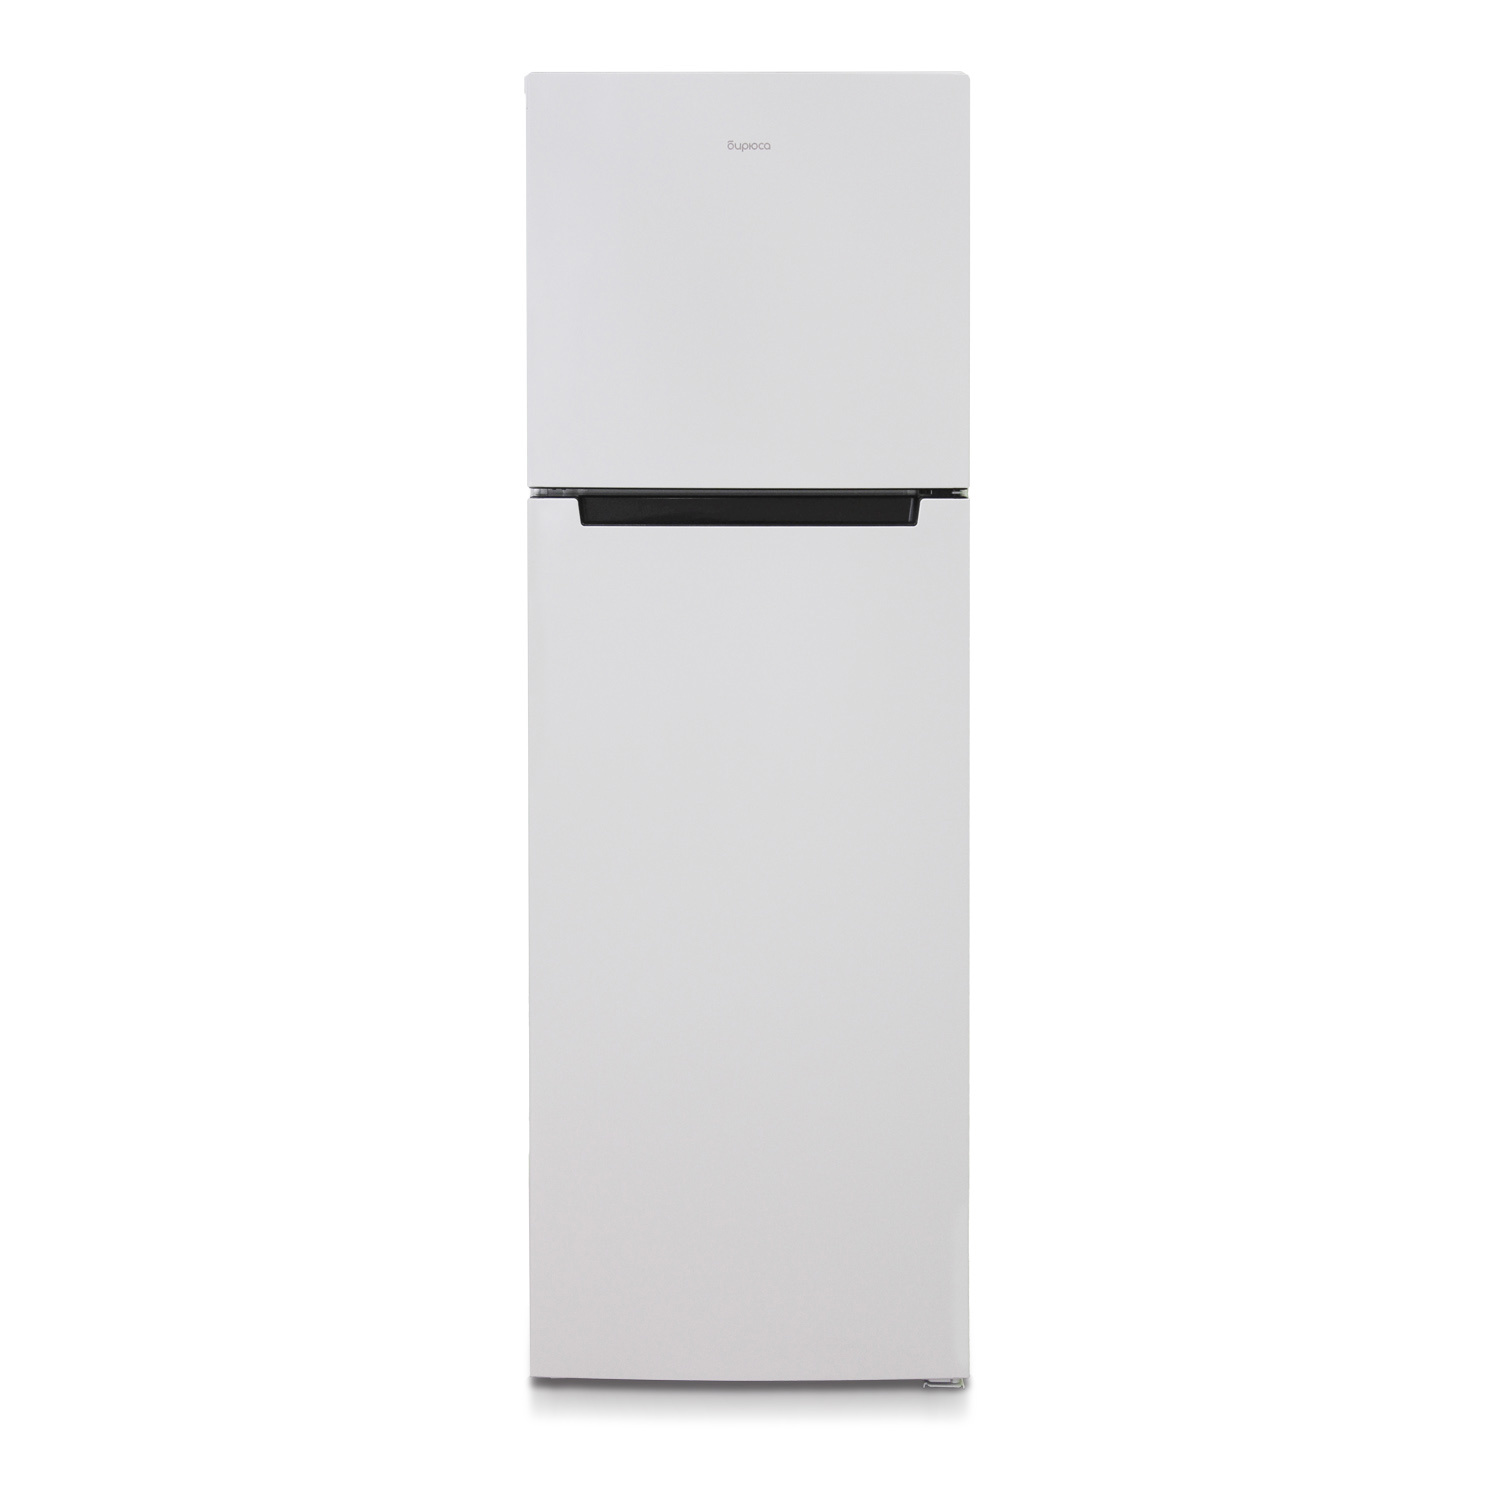 91054821 Отдельностоящий холодильник Б-6039 60x180 см цвет белый STLM-0460035 БИРЮСА